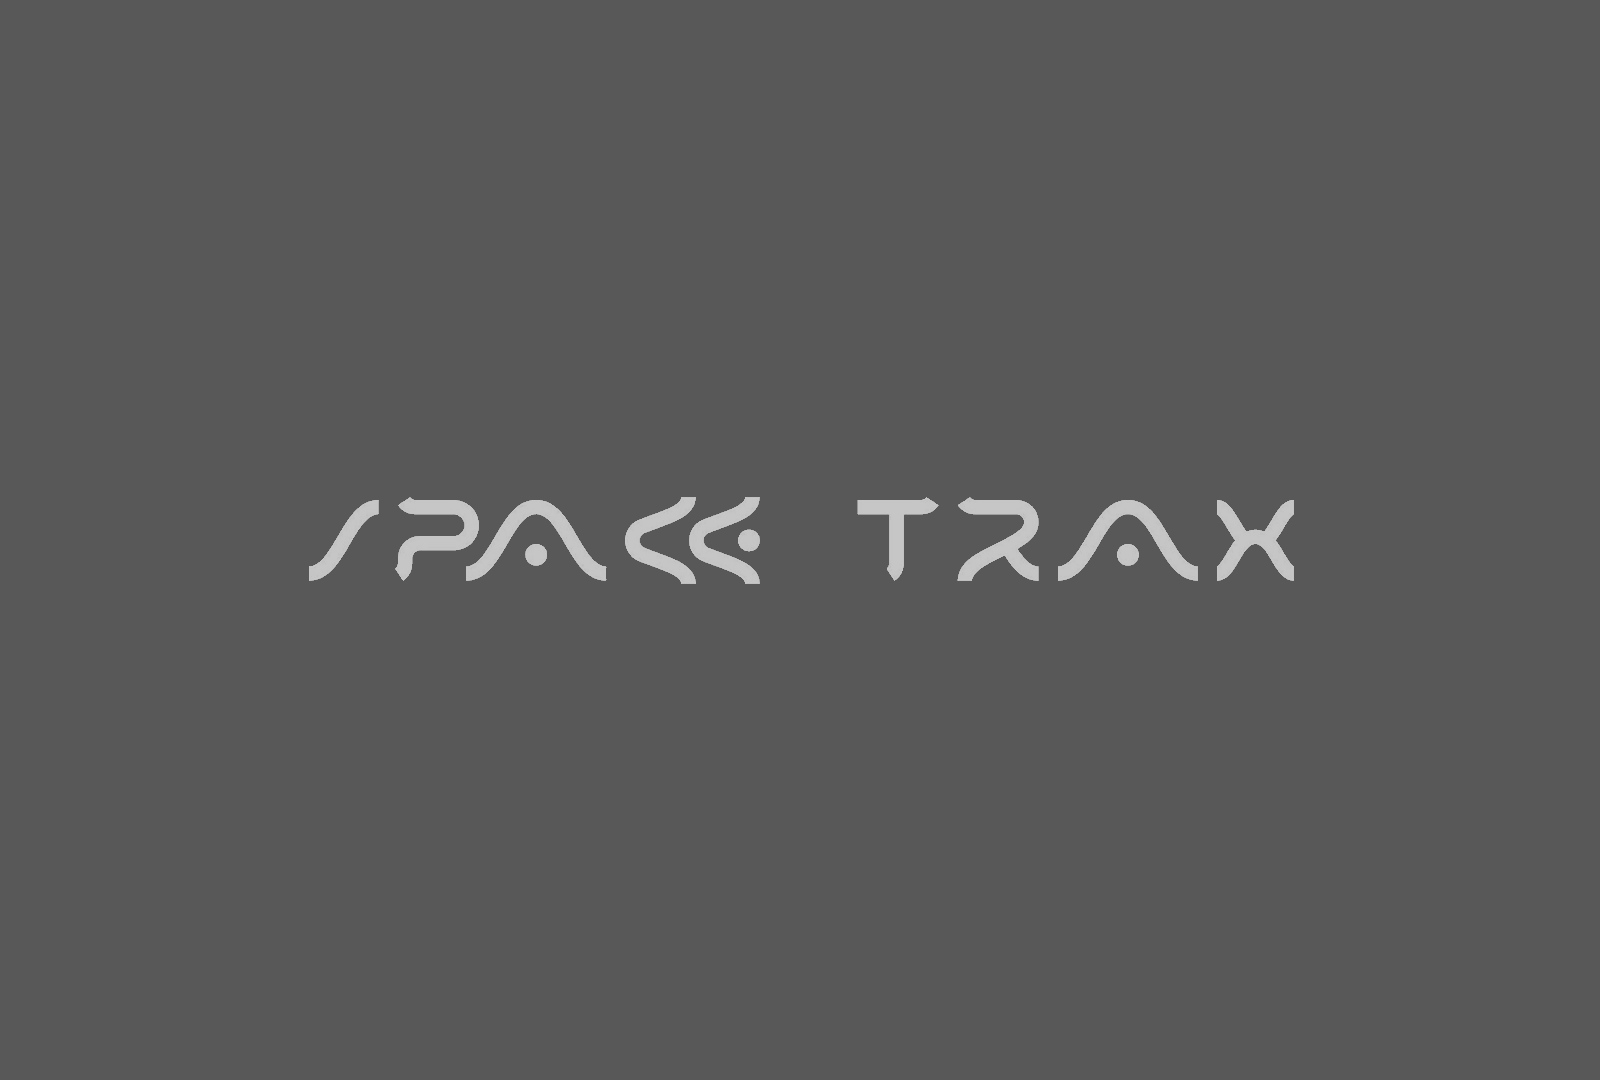 Space Traxx